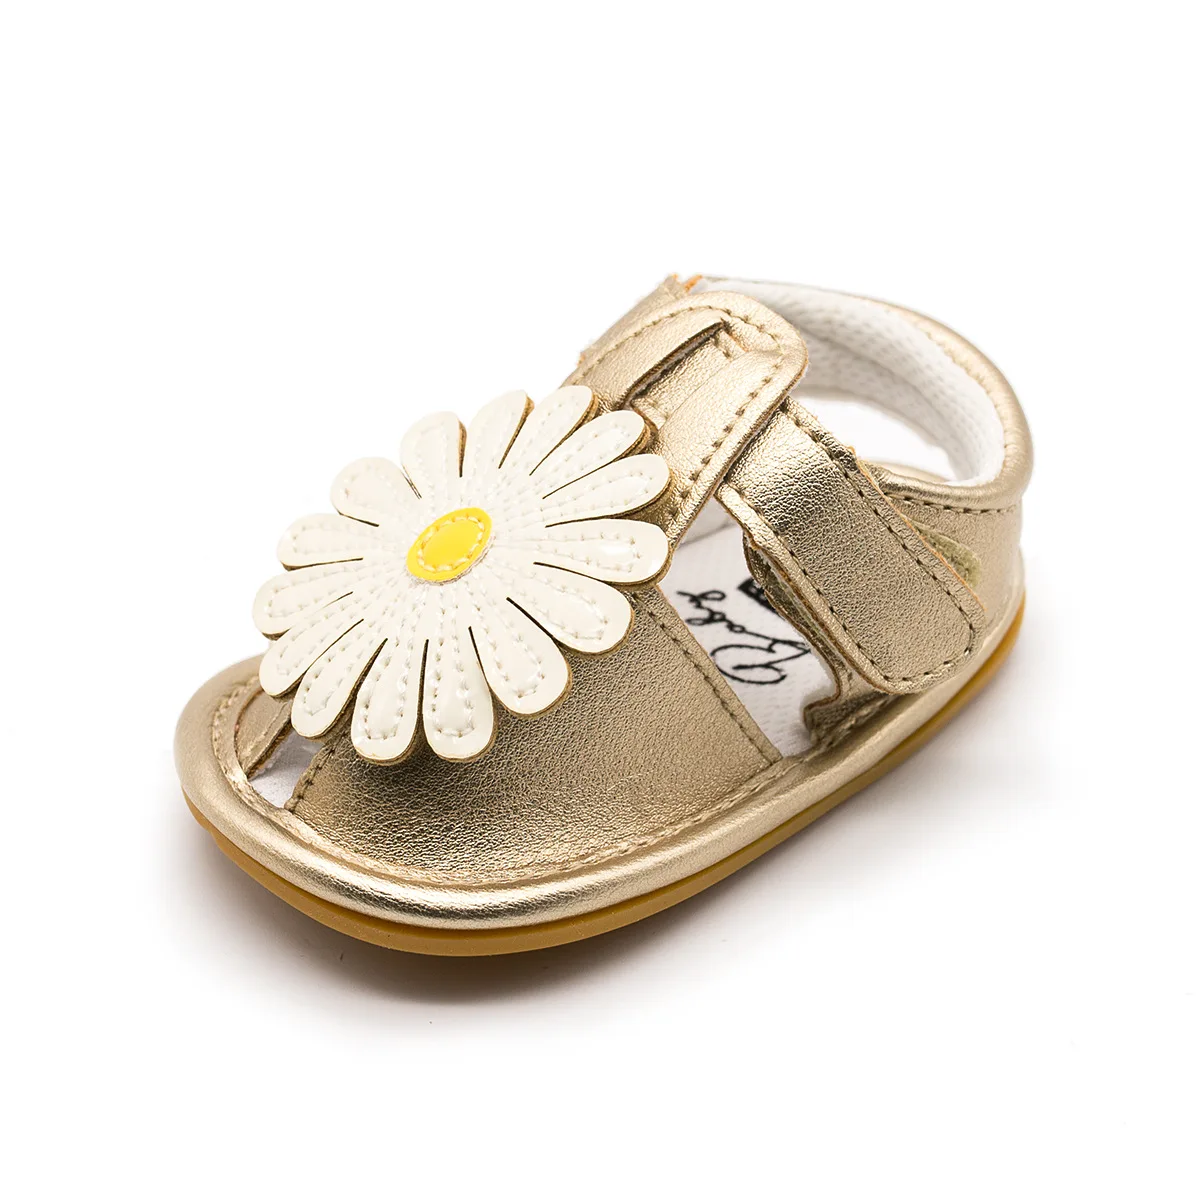 YWHUANSEN/6 цветов, летняя обувь для маленьких девочек, обувь для малышей, мягкая нескользящая обувь принцессы из искусственной кожи с